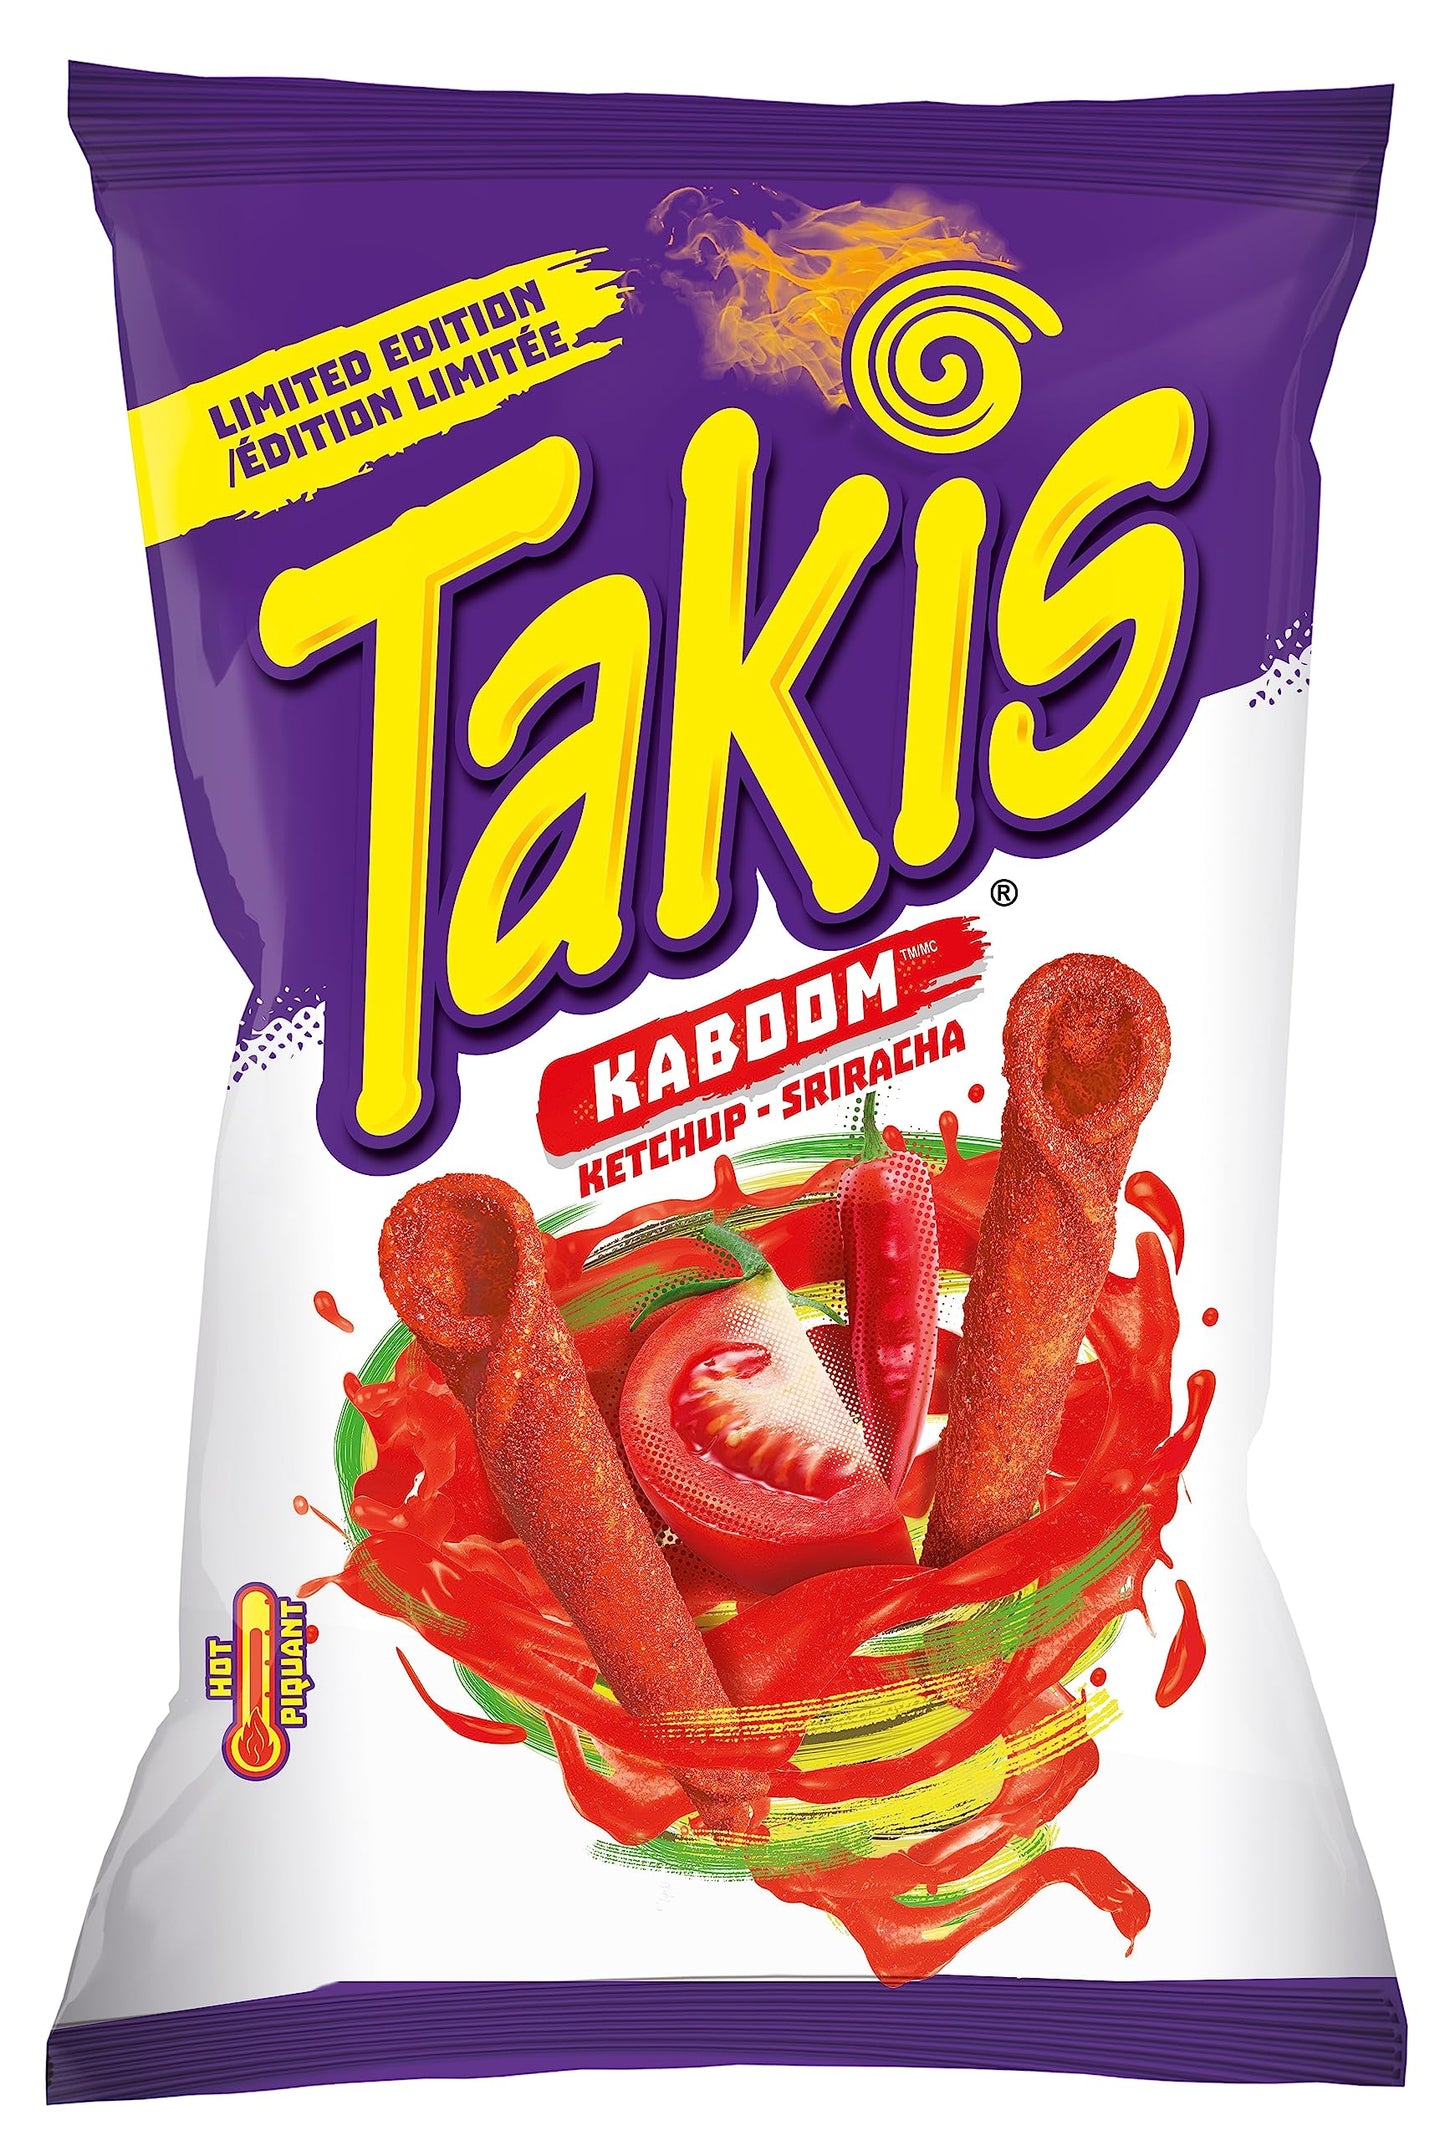 Takis Kaboom Ketchup-Sriracha front cover